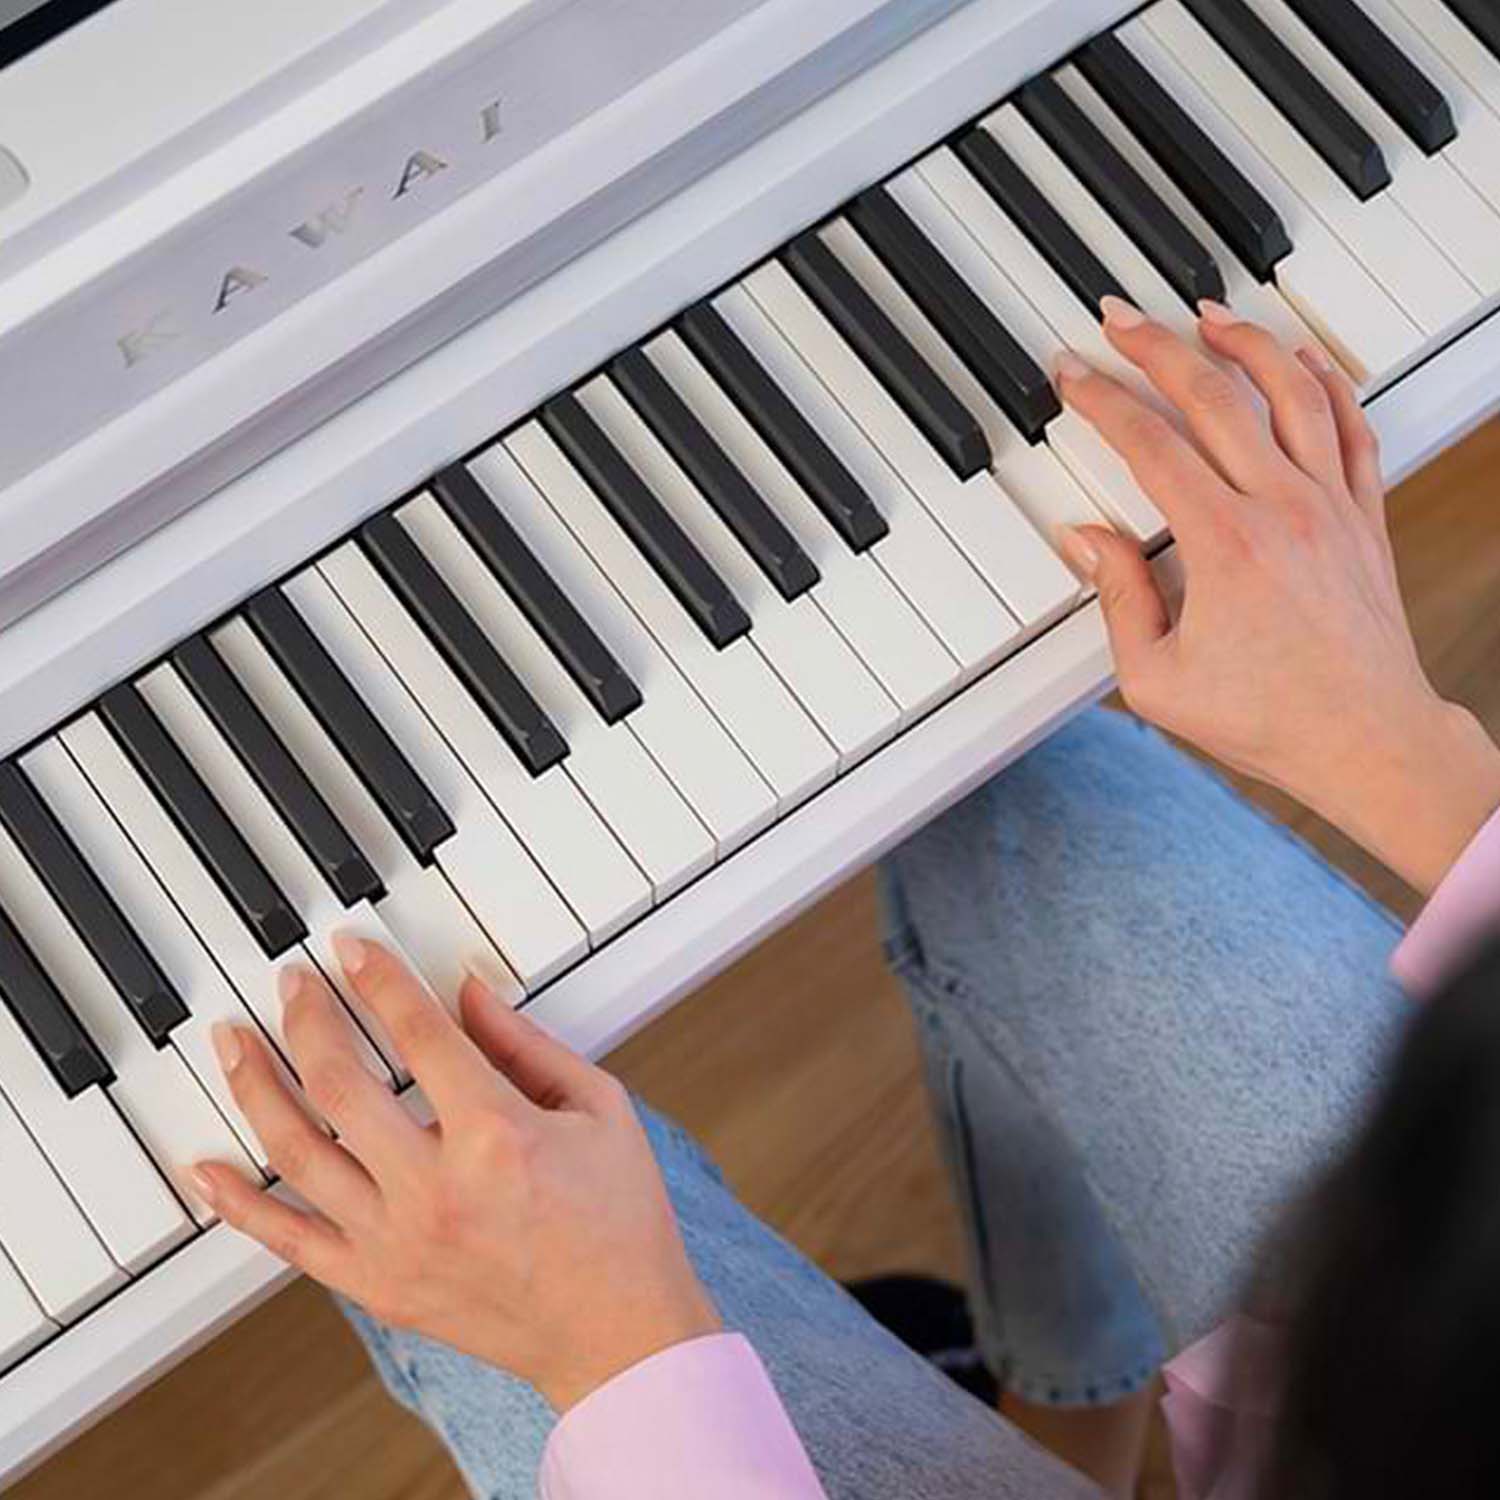 Closeup image of woman's hands playing a Kawai CA501 keyboard